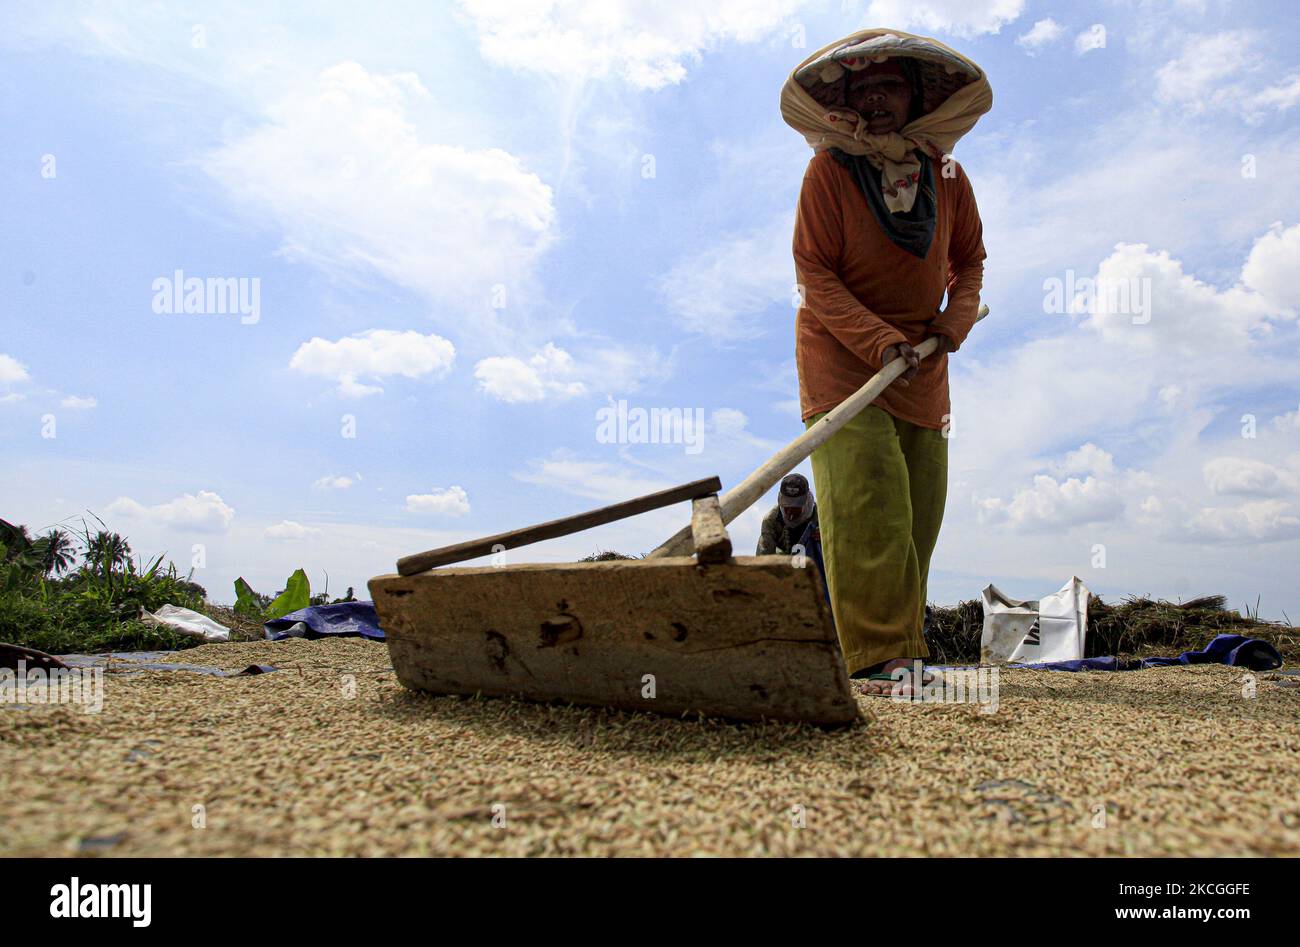 Ein Landwirt sah am 26. Juni 2021, wie er auf einem Reisfeld in Bogor, West-Java, Indonesien, das Reiskorn mit seinen Rechen ausbreitete. Die Trocknung von Reiskörnern ist einer der wichtigsten Schritte, bevor sie in die Reismühle gebracht werden. Durch die Verringerung des Feuchtigkeitsgehalts des Getreides wird das Risiko von Bakterien für die Lagerung auf ein Minimum reduziert. (Foto von Adriana Adie/NurPhoto) Stockfoto